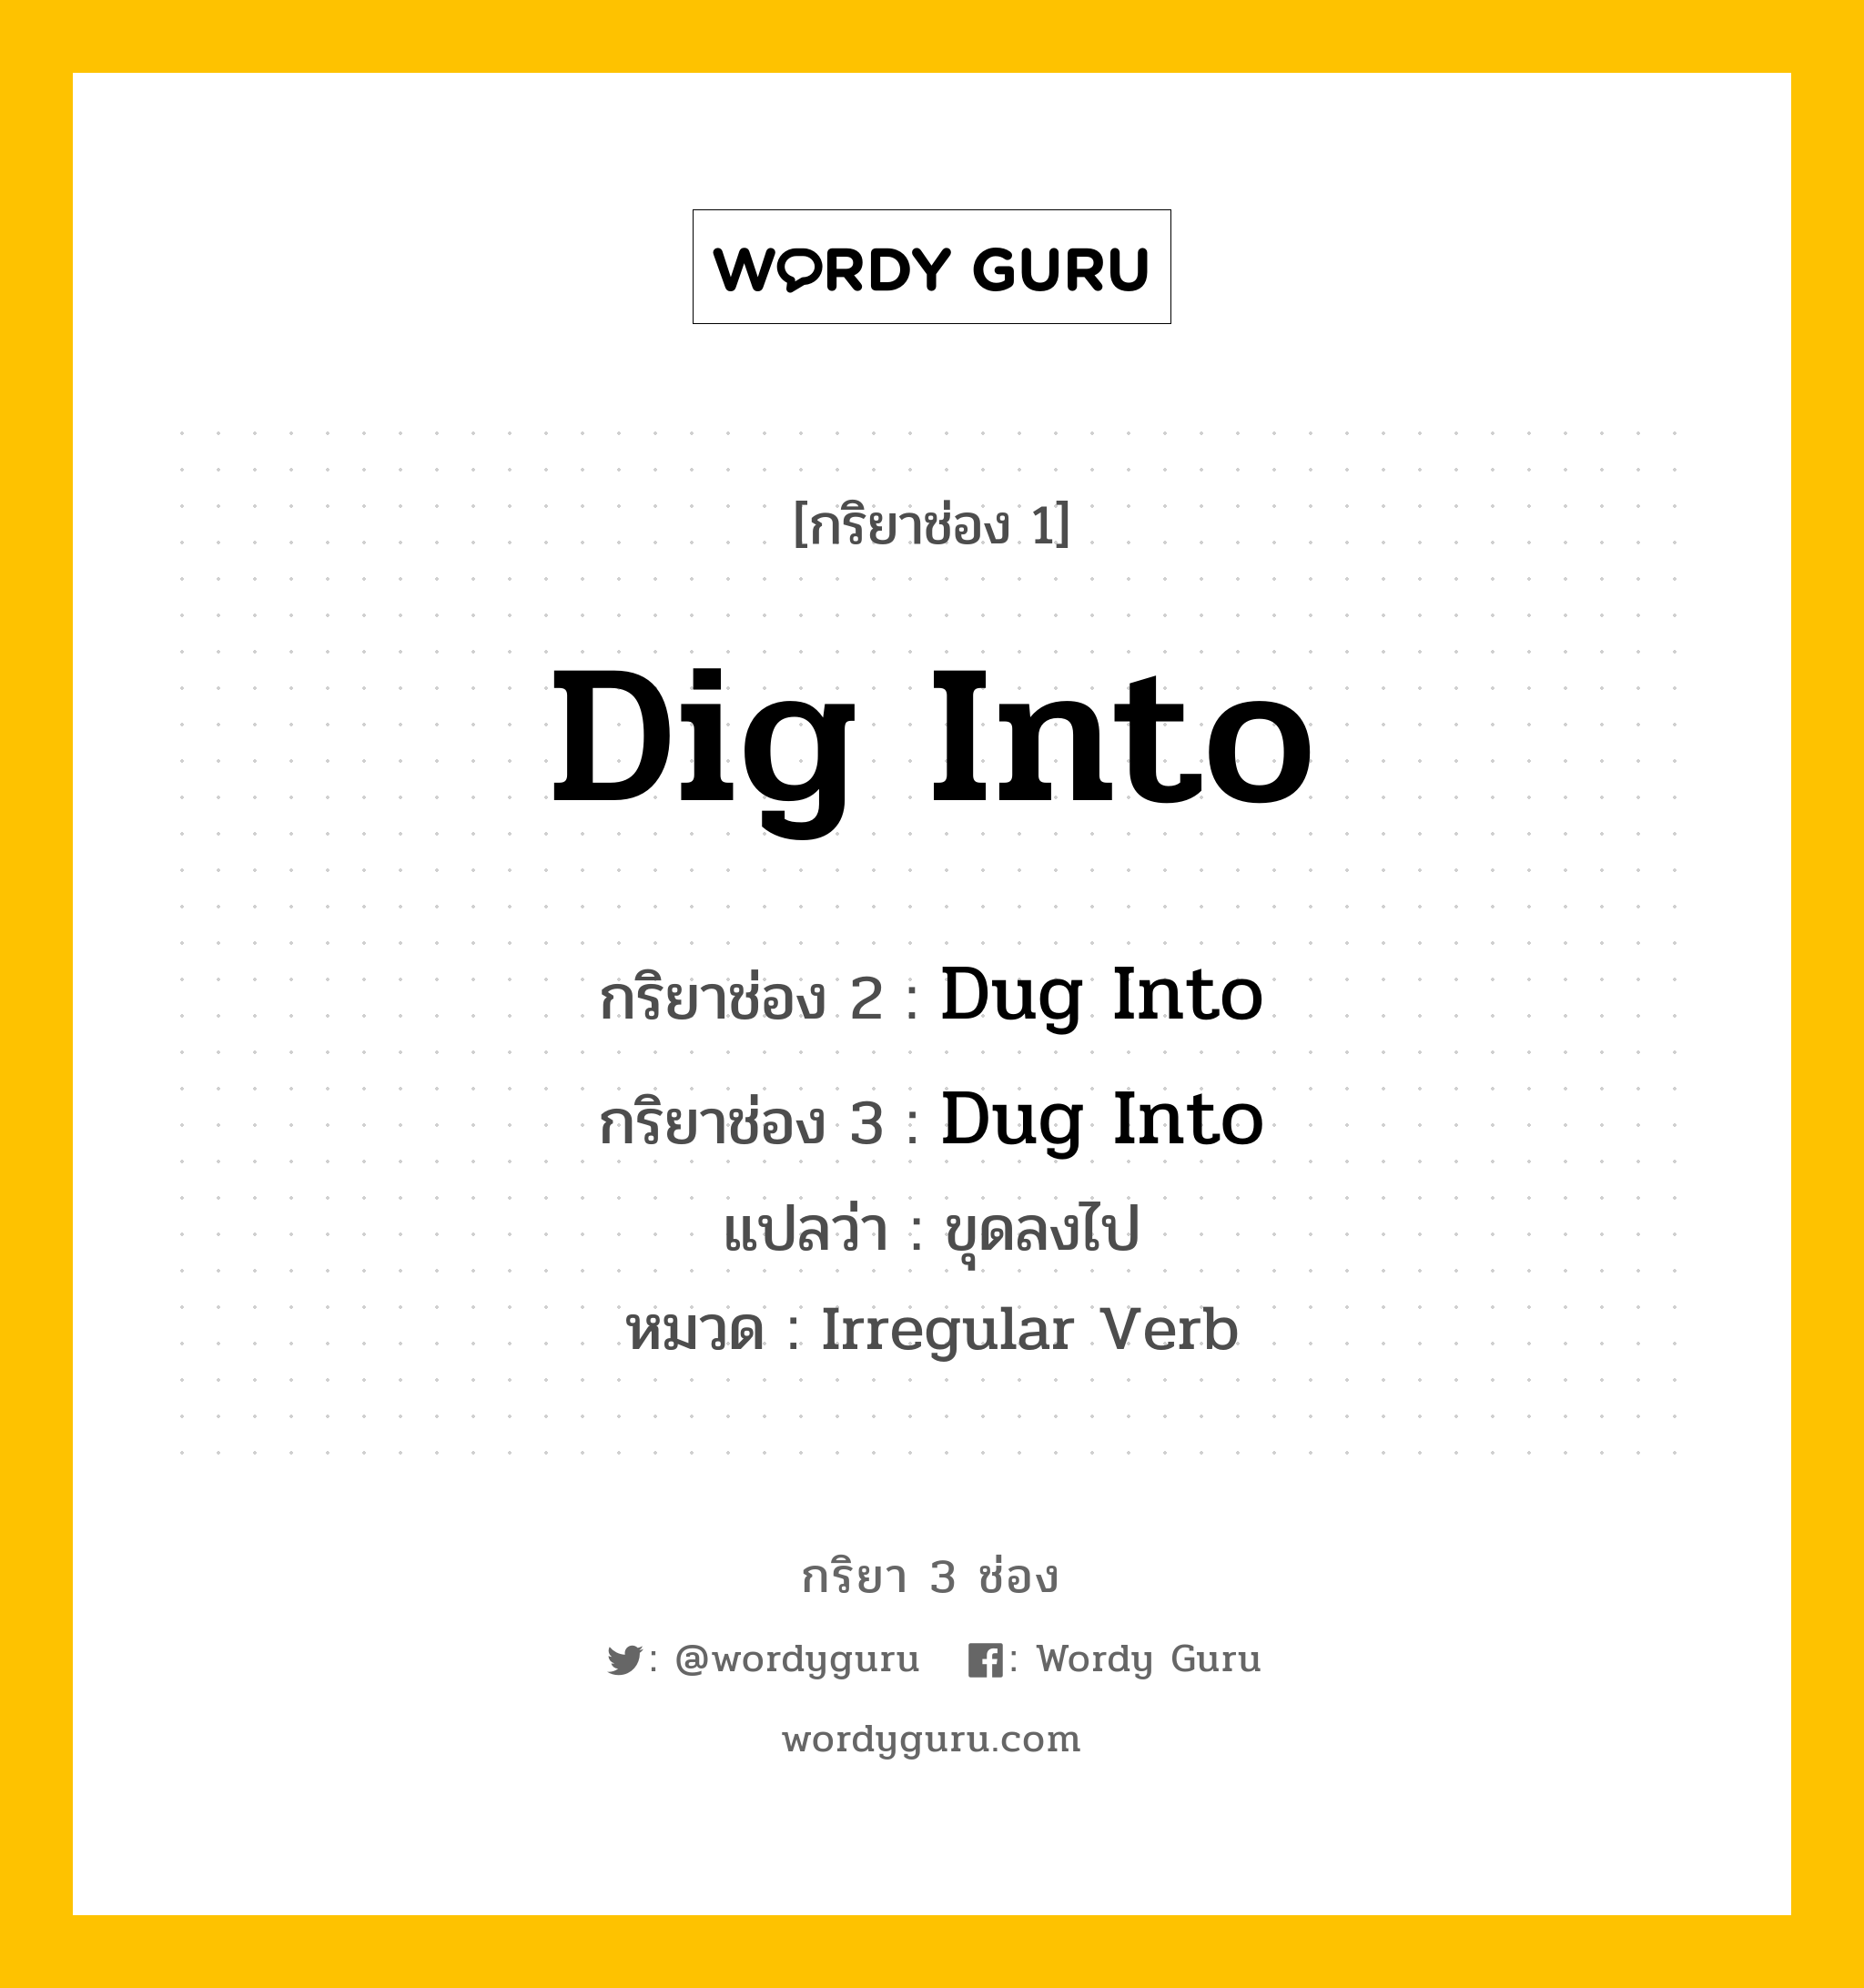 กริยา 3 ช่อง ของ Dig Into คืออะไร? มาดูคำอ่าน คำแปลกันเลย, กริยาช่อง 1 Dig Into กริยาช่อง 2 Dug Into กริยาช่อง 3 Dug Into แปลว่า ขุดลงไป หมวด Irregular Verb หมวด Irregular Verb